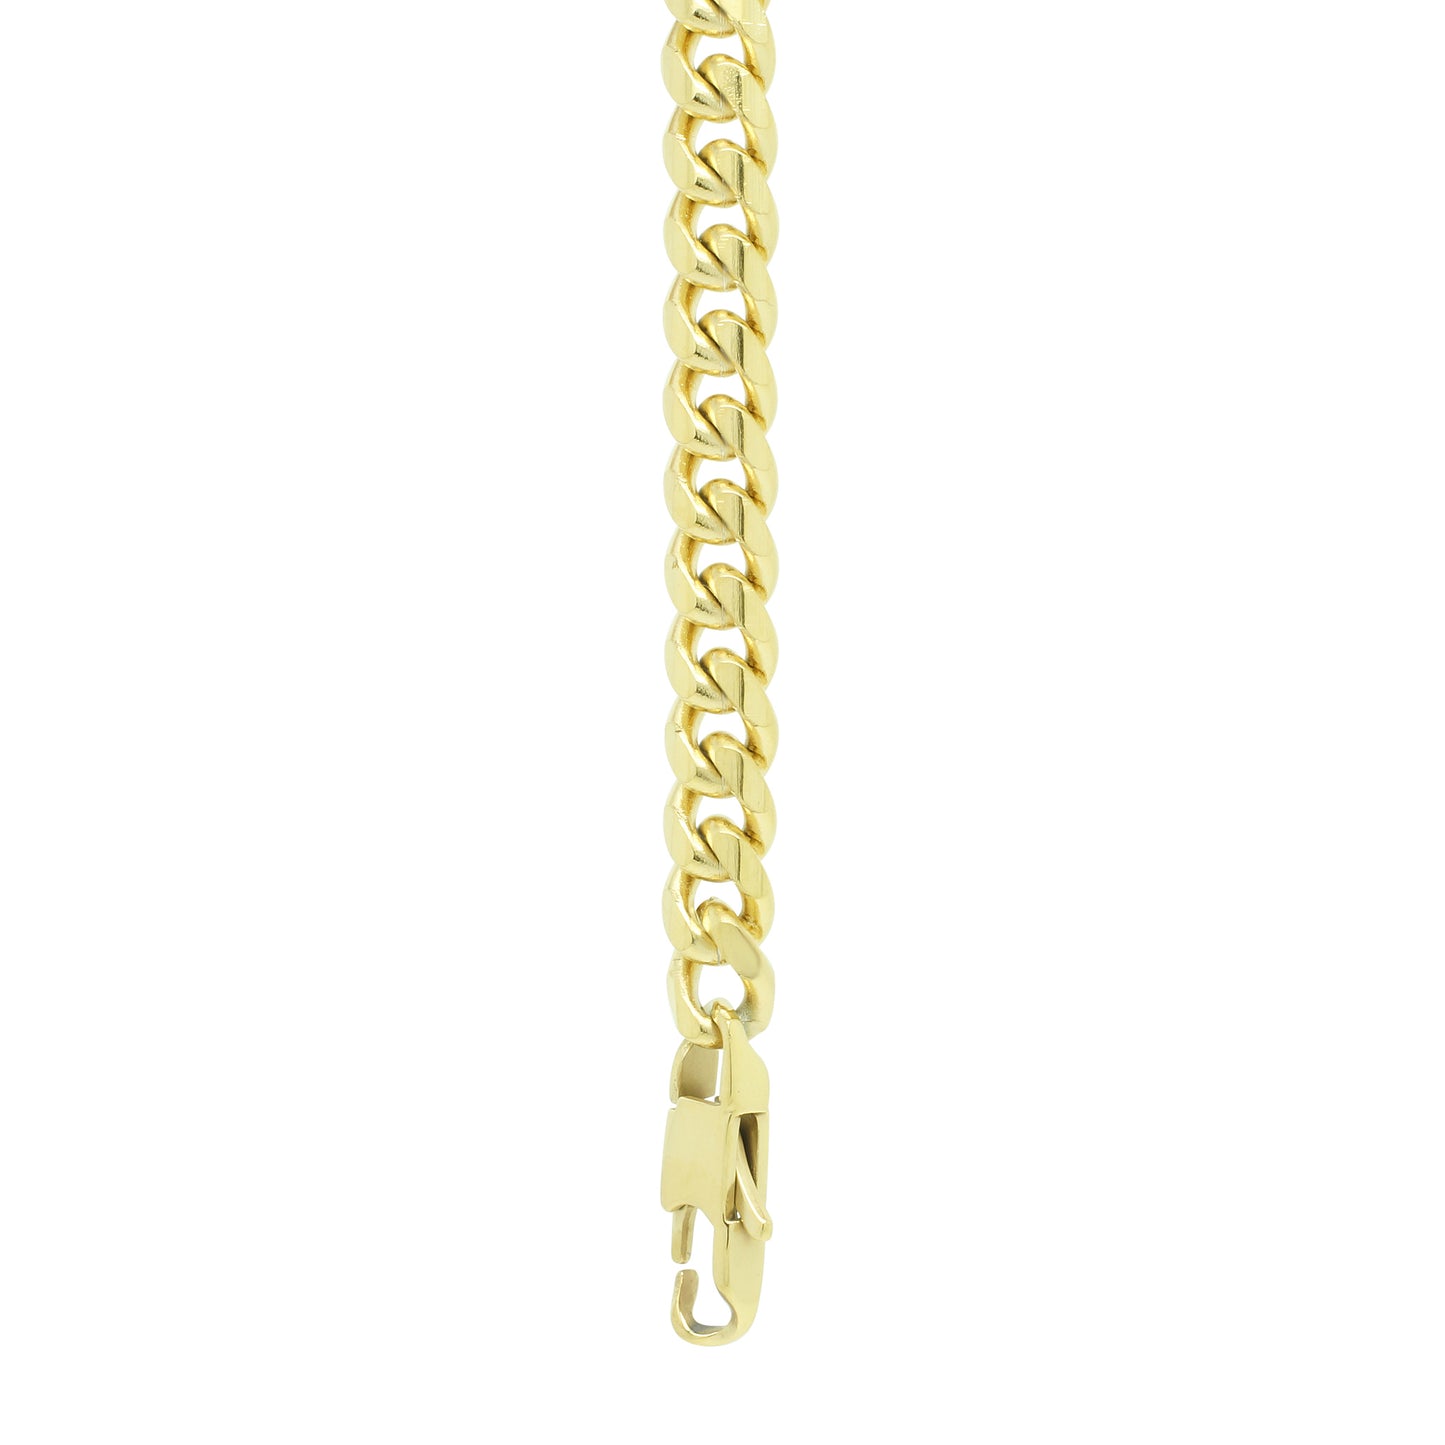 8mm Chain Bracelet - Gold